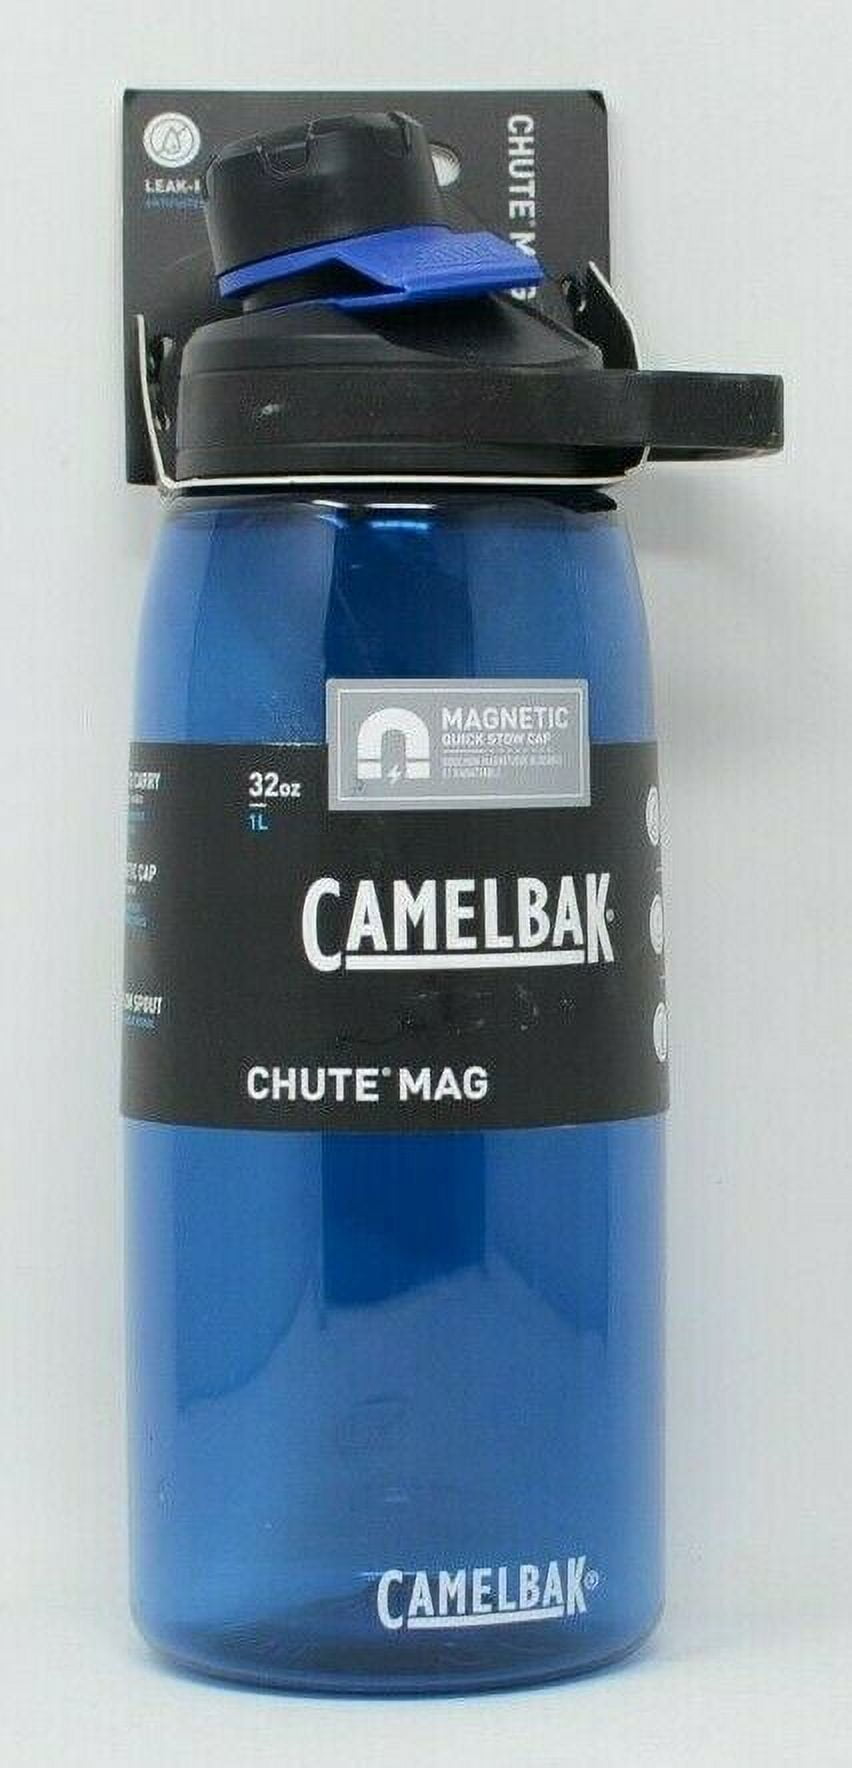 Borraccia Camelbak Chute Mag 1L. Fresca (e calda) compagna di avventura